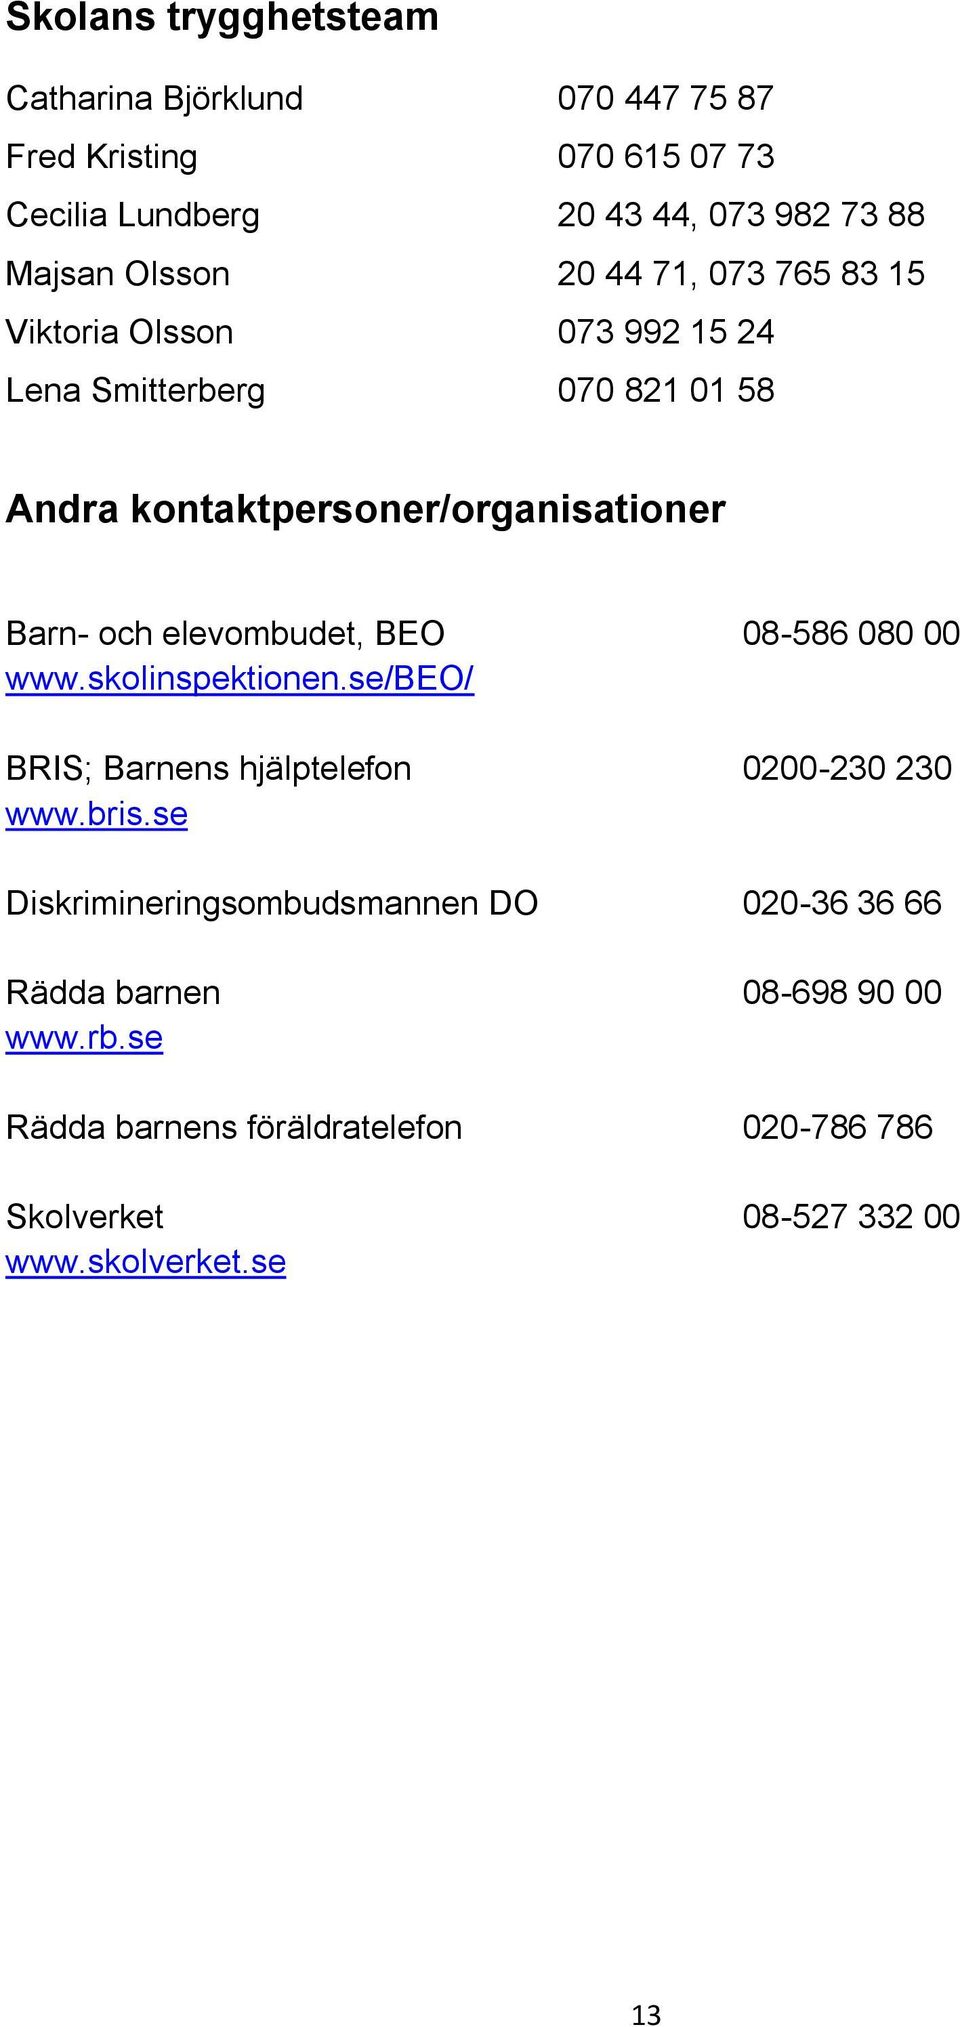 och elevombudet, BEO 08-586 080 00 www.skolinspektionen.se/beo/ BRIS; Barnens hjälptelefon 0200-230 230 www.bris.